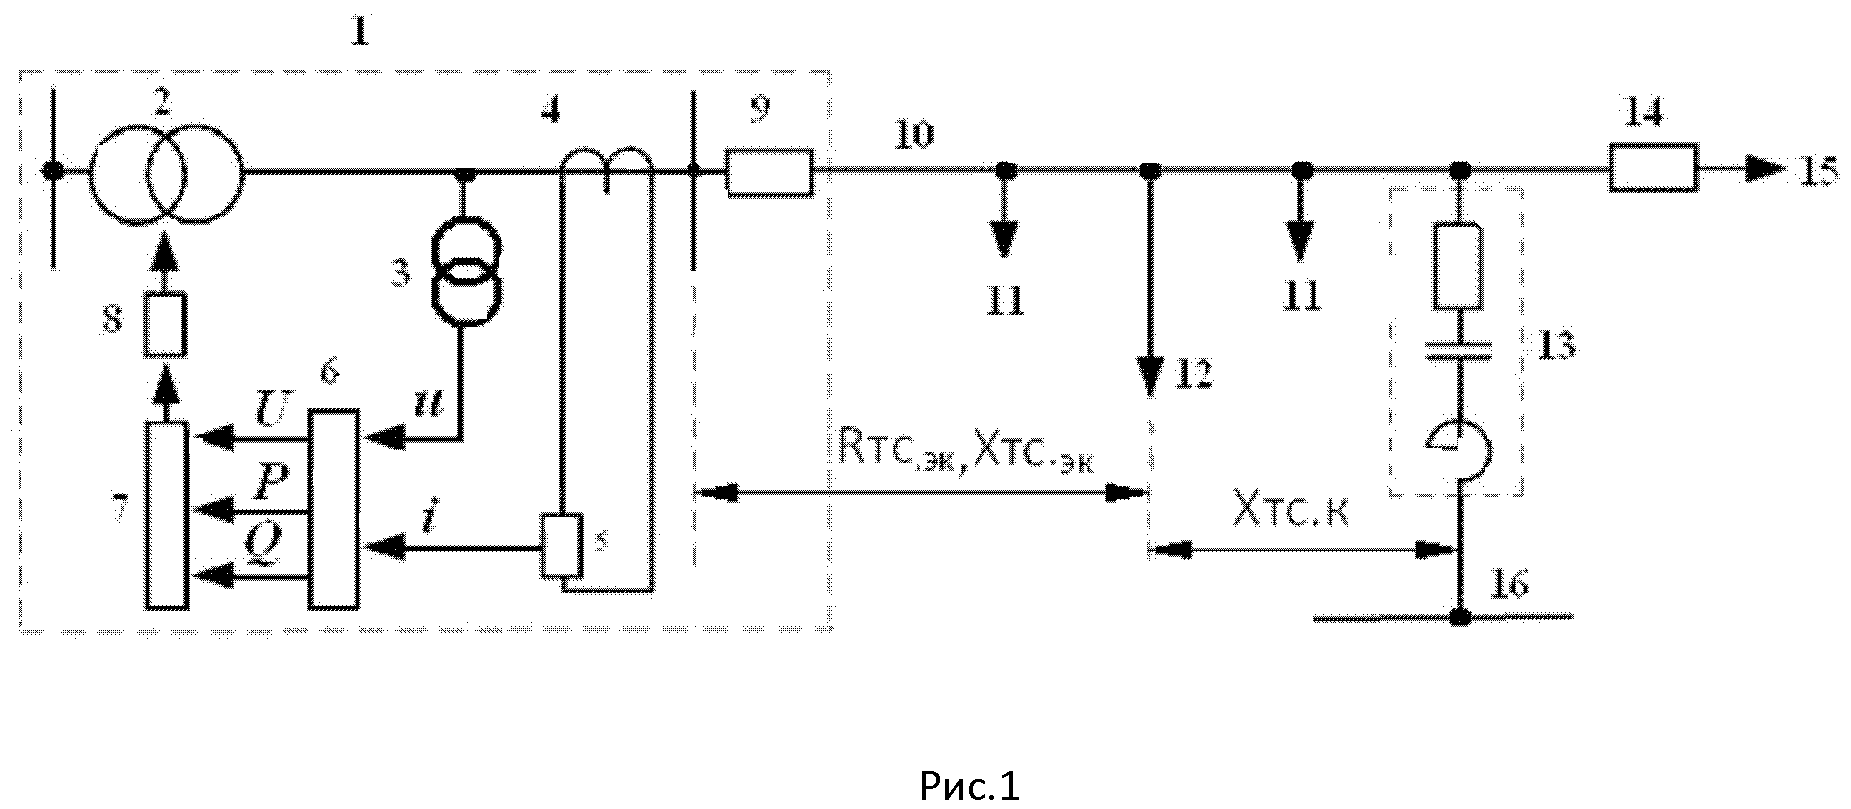 Способ регулирования напряжения на подстанции при одностороннем питании сети переменного тока с нерегулируемой установкой компенсации реактивной мощности